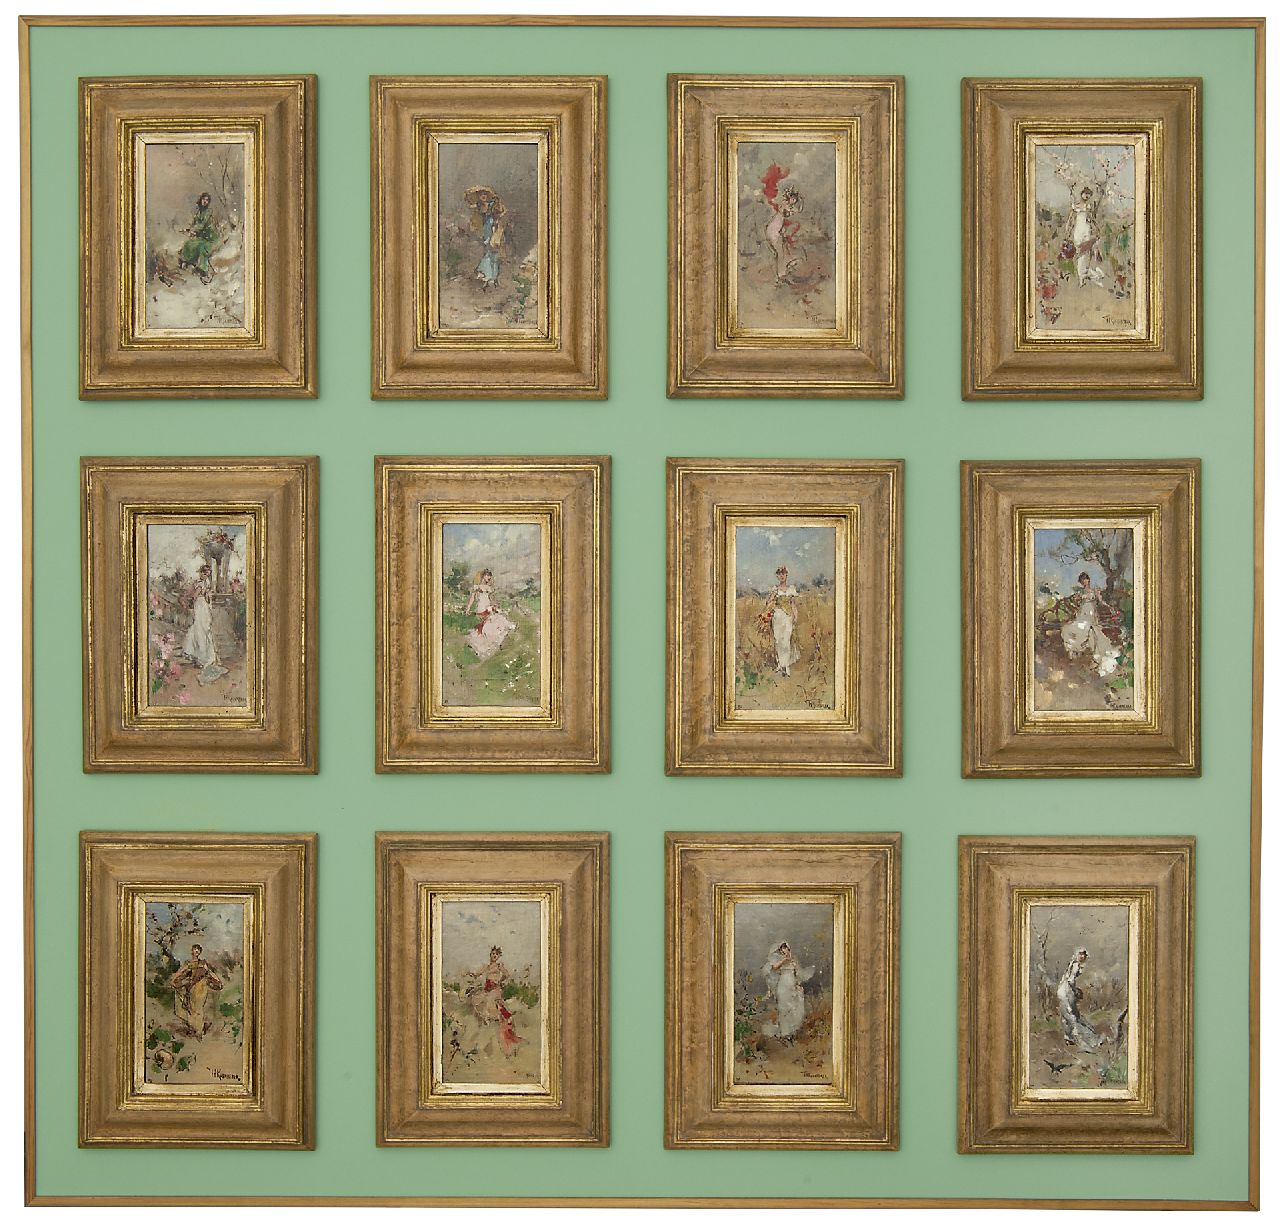 Kaemmerer F.H.  | Frederik Hendrik Kaemmerer | Schilderijen te koop aangeboden | Januari - sterrenbeeld Steenbok (tezamen met 15949 t/m 15960), olieverf op doek op schildersboard 18,5 x 10,3 cm, gesigneerd rechtsonder